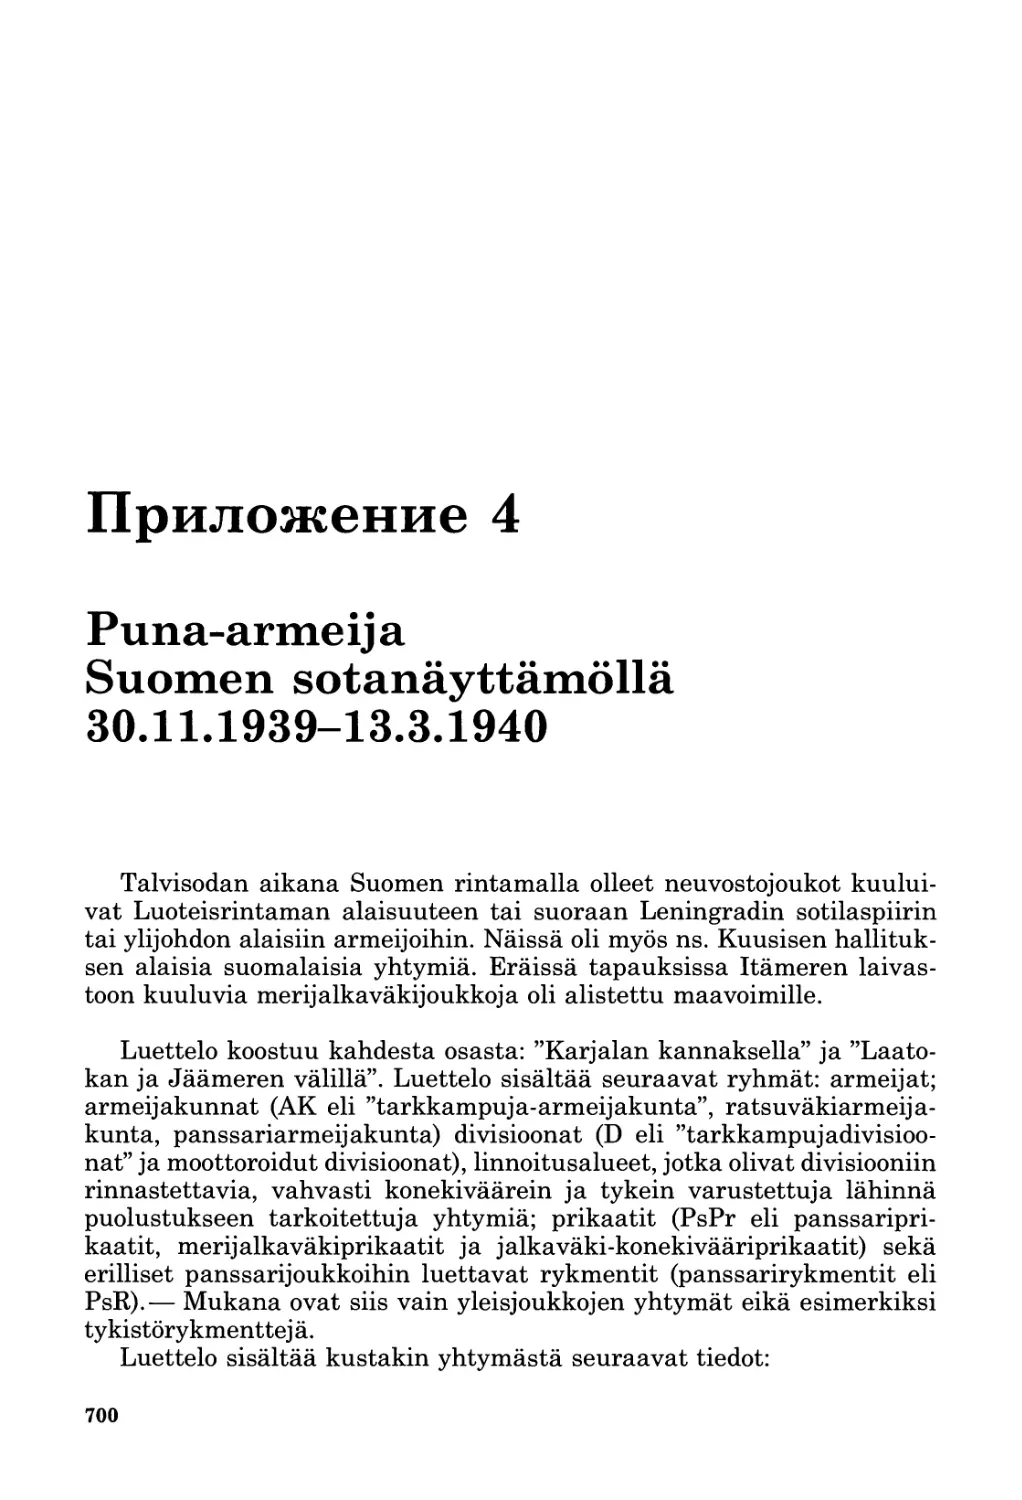 Приложение 4. Puna-armeija Suomen sotanäyttämöllä 30.11.1939—13.3.1940